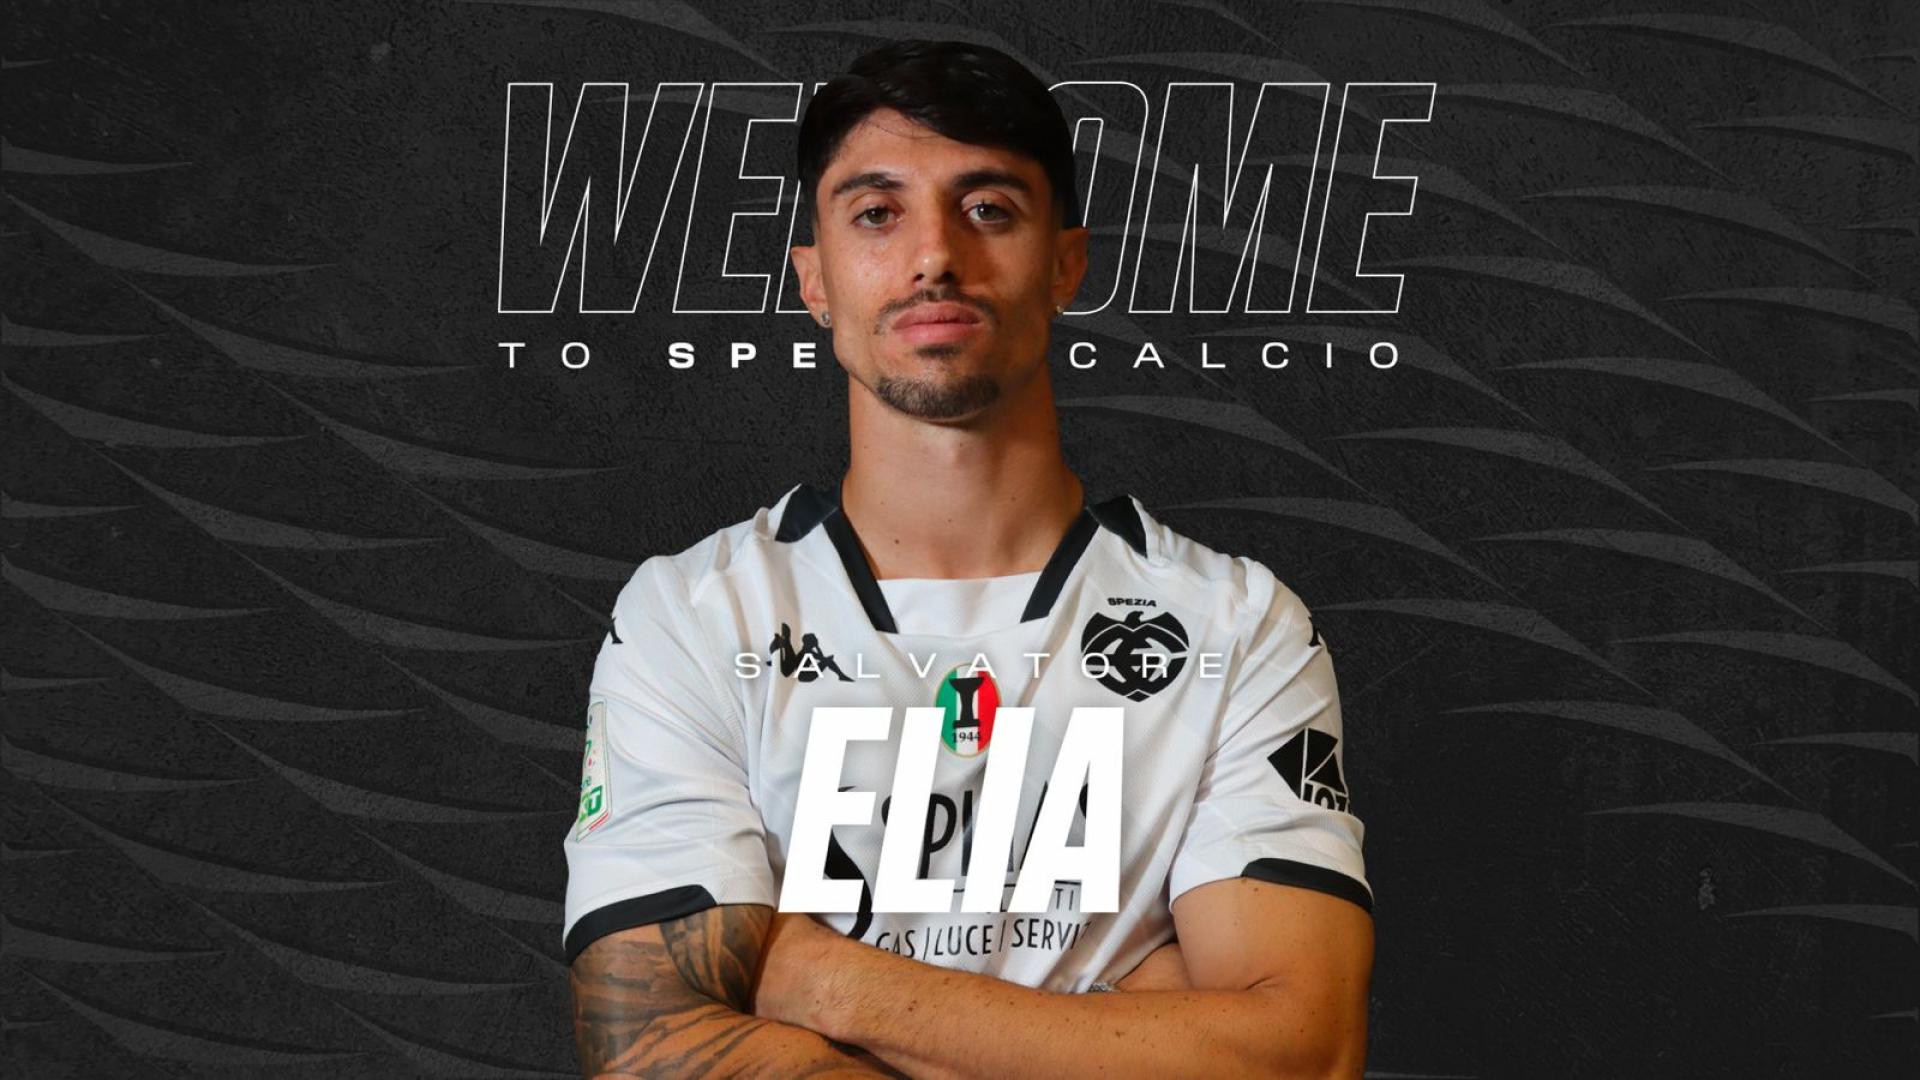 Ufficiale | Salvatore Elia è un nuovo calciatore dello Spezia